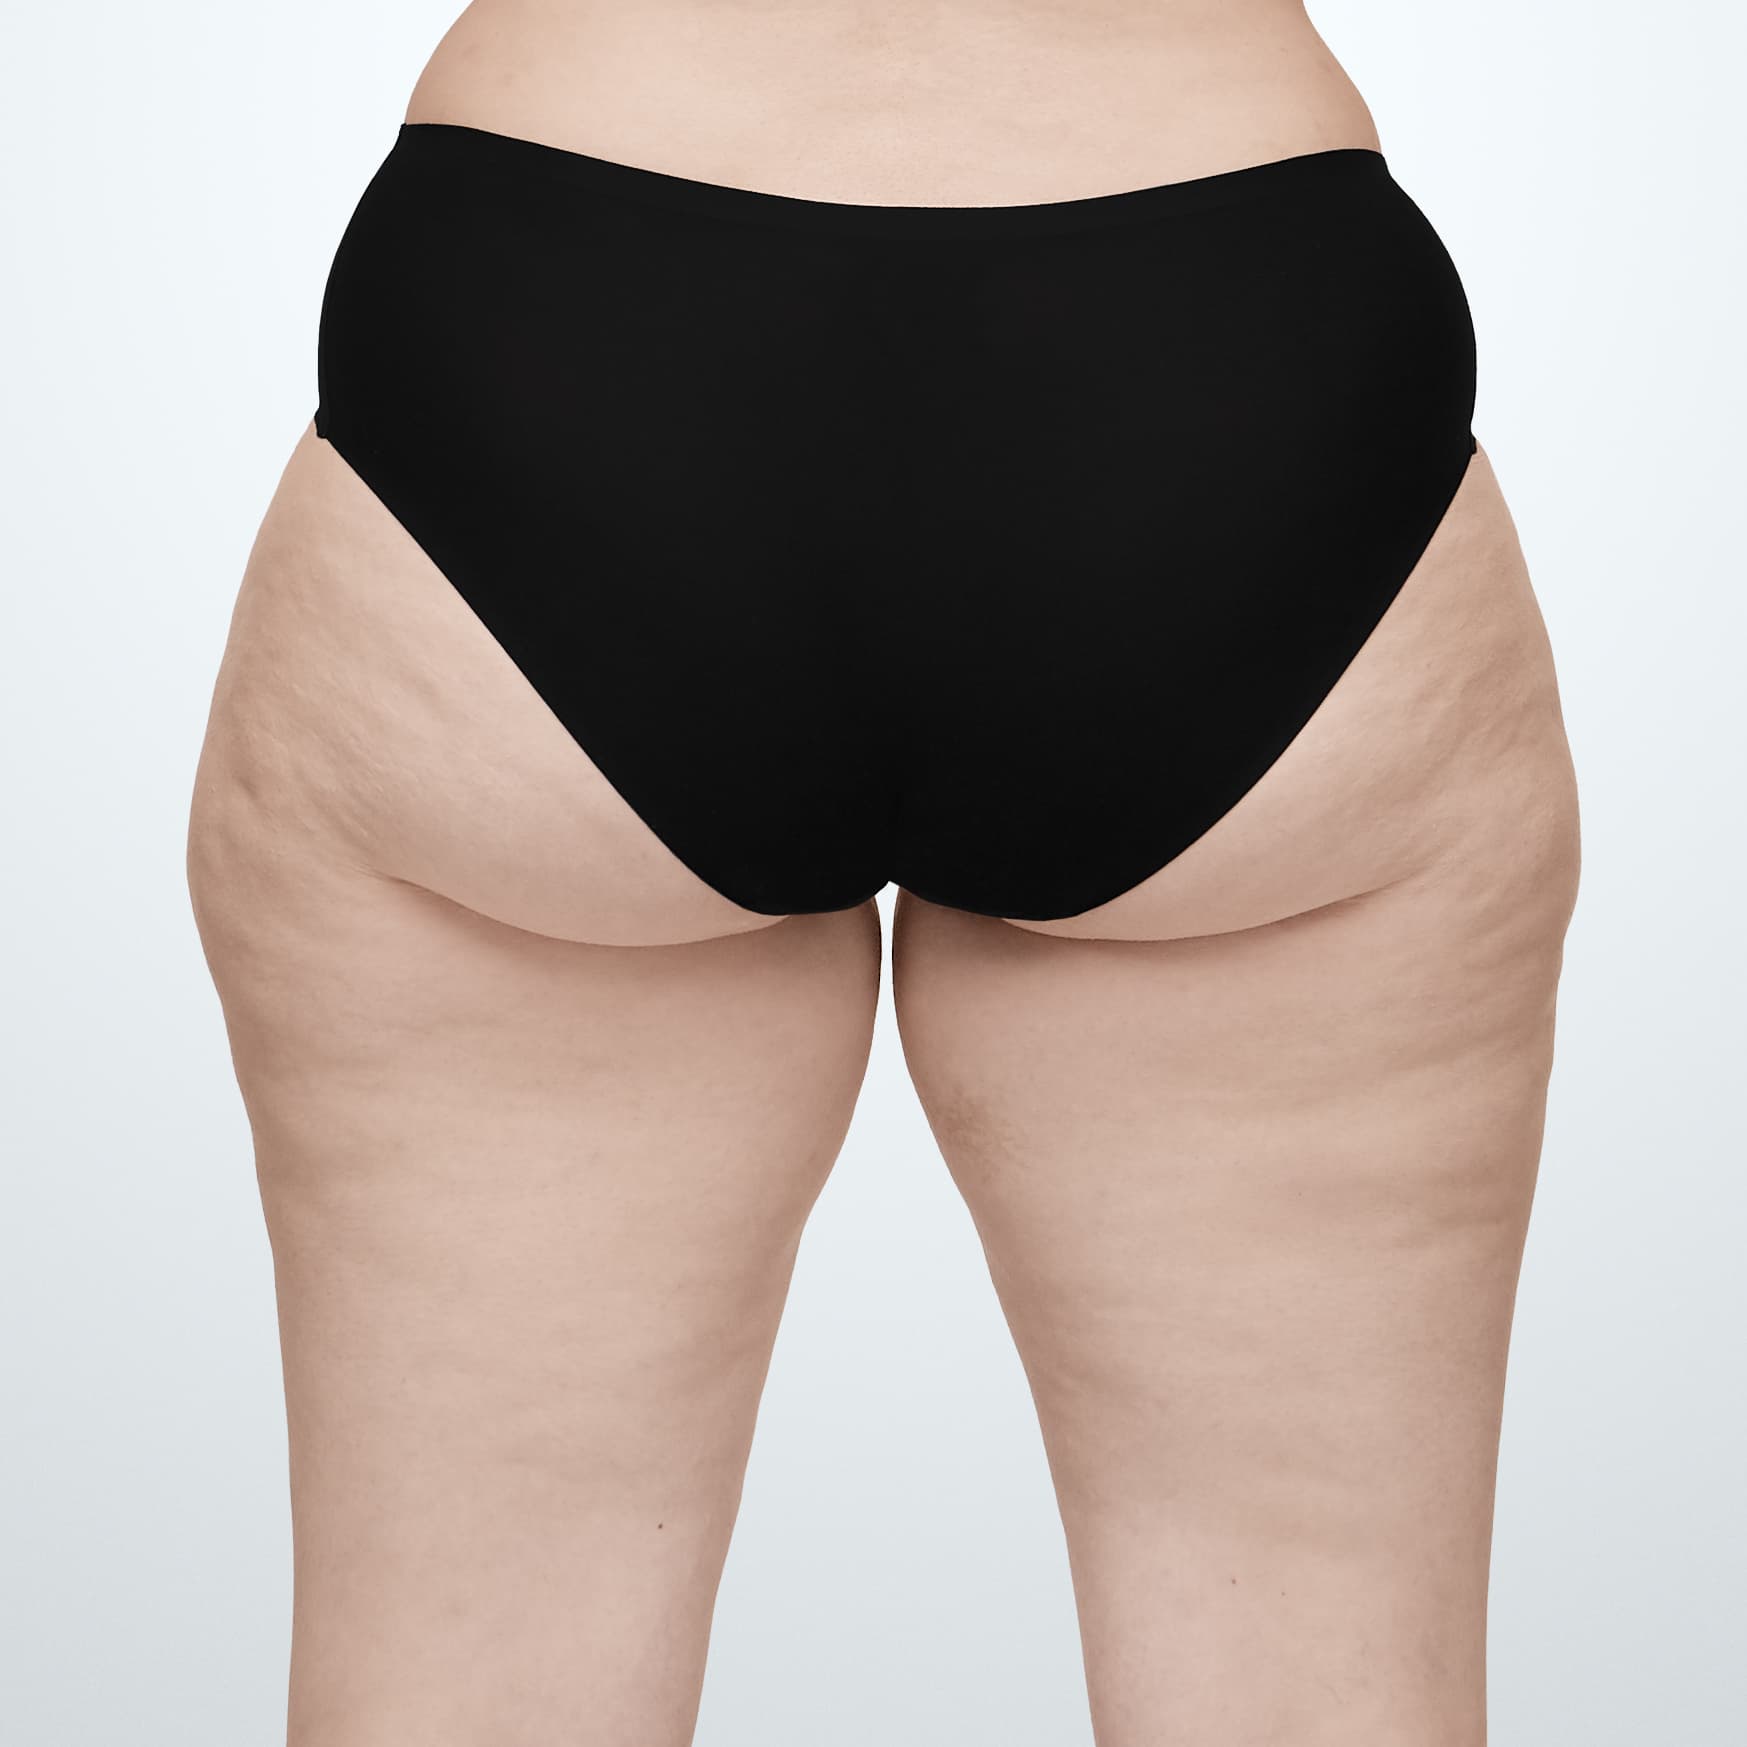 Thighs_Female_Model2_Before_Back.jpg